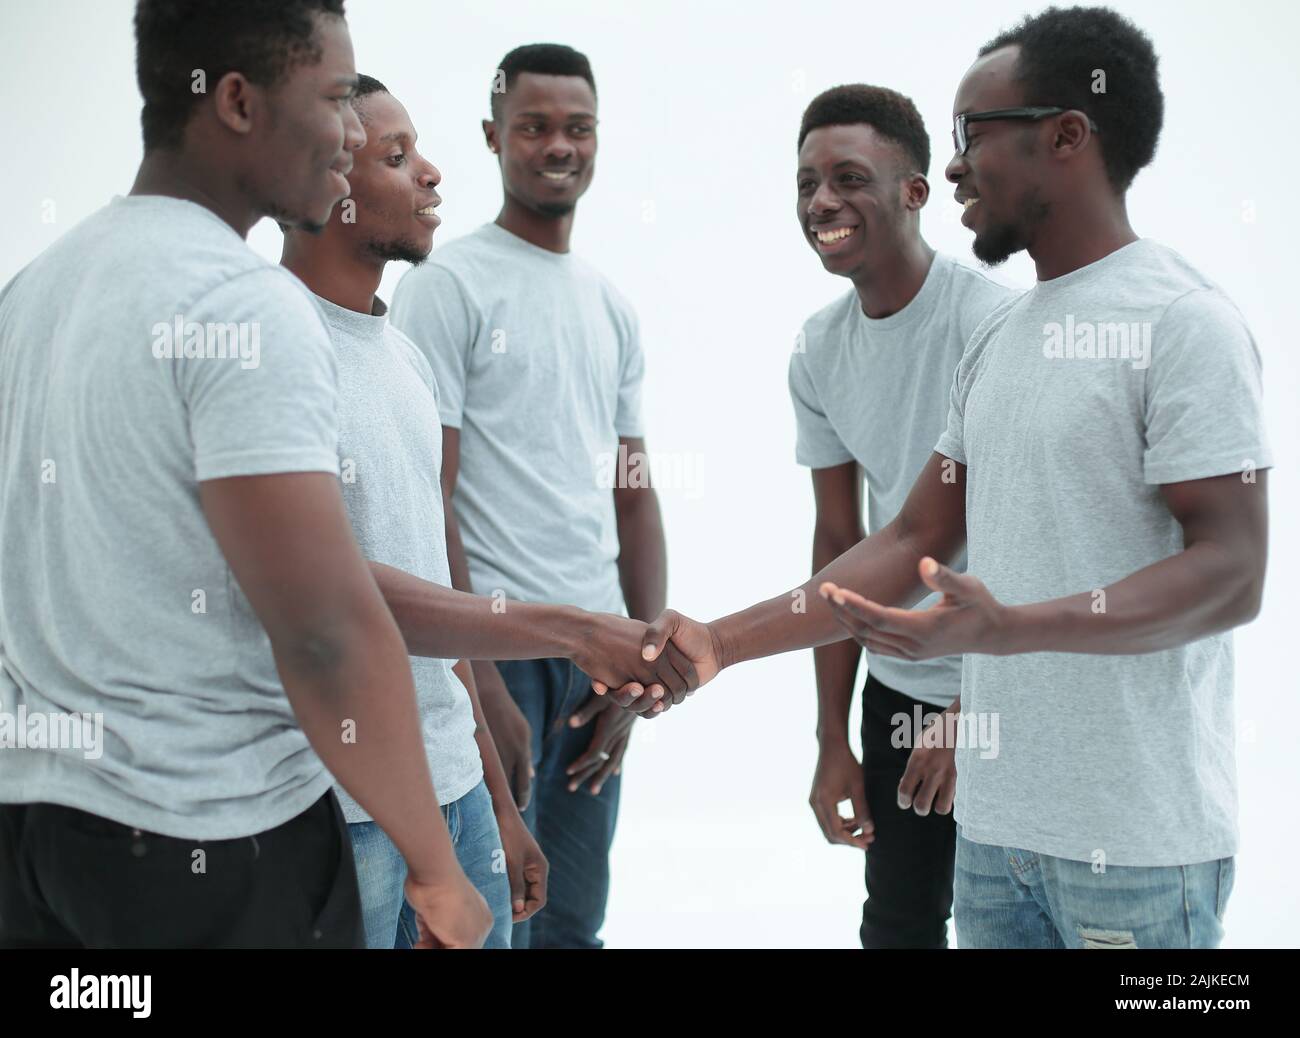 Junge Menschen die Hände schütteln, stehen in einem Kreis von Freunden Stockfoto